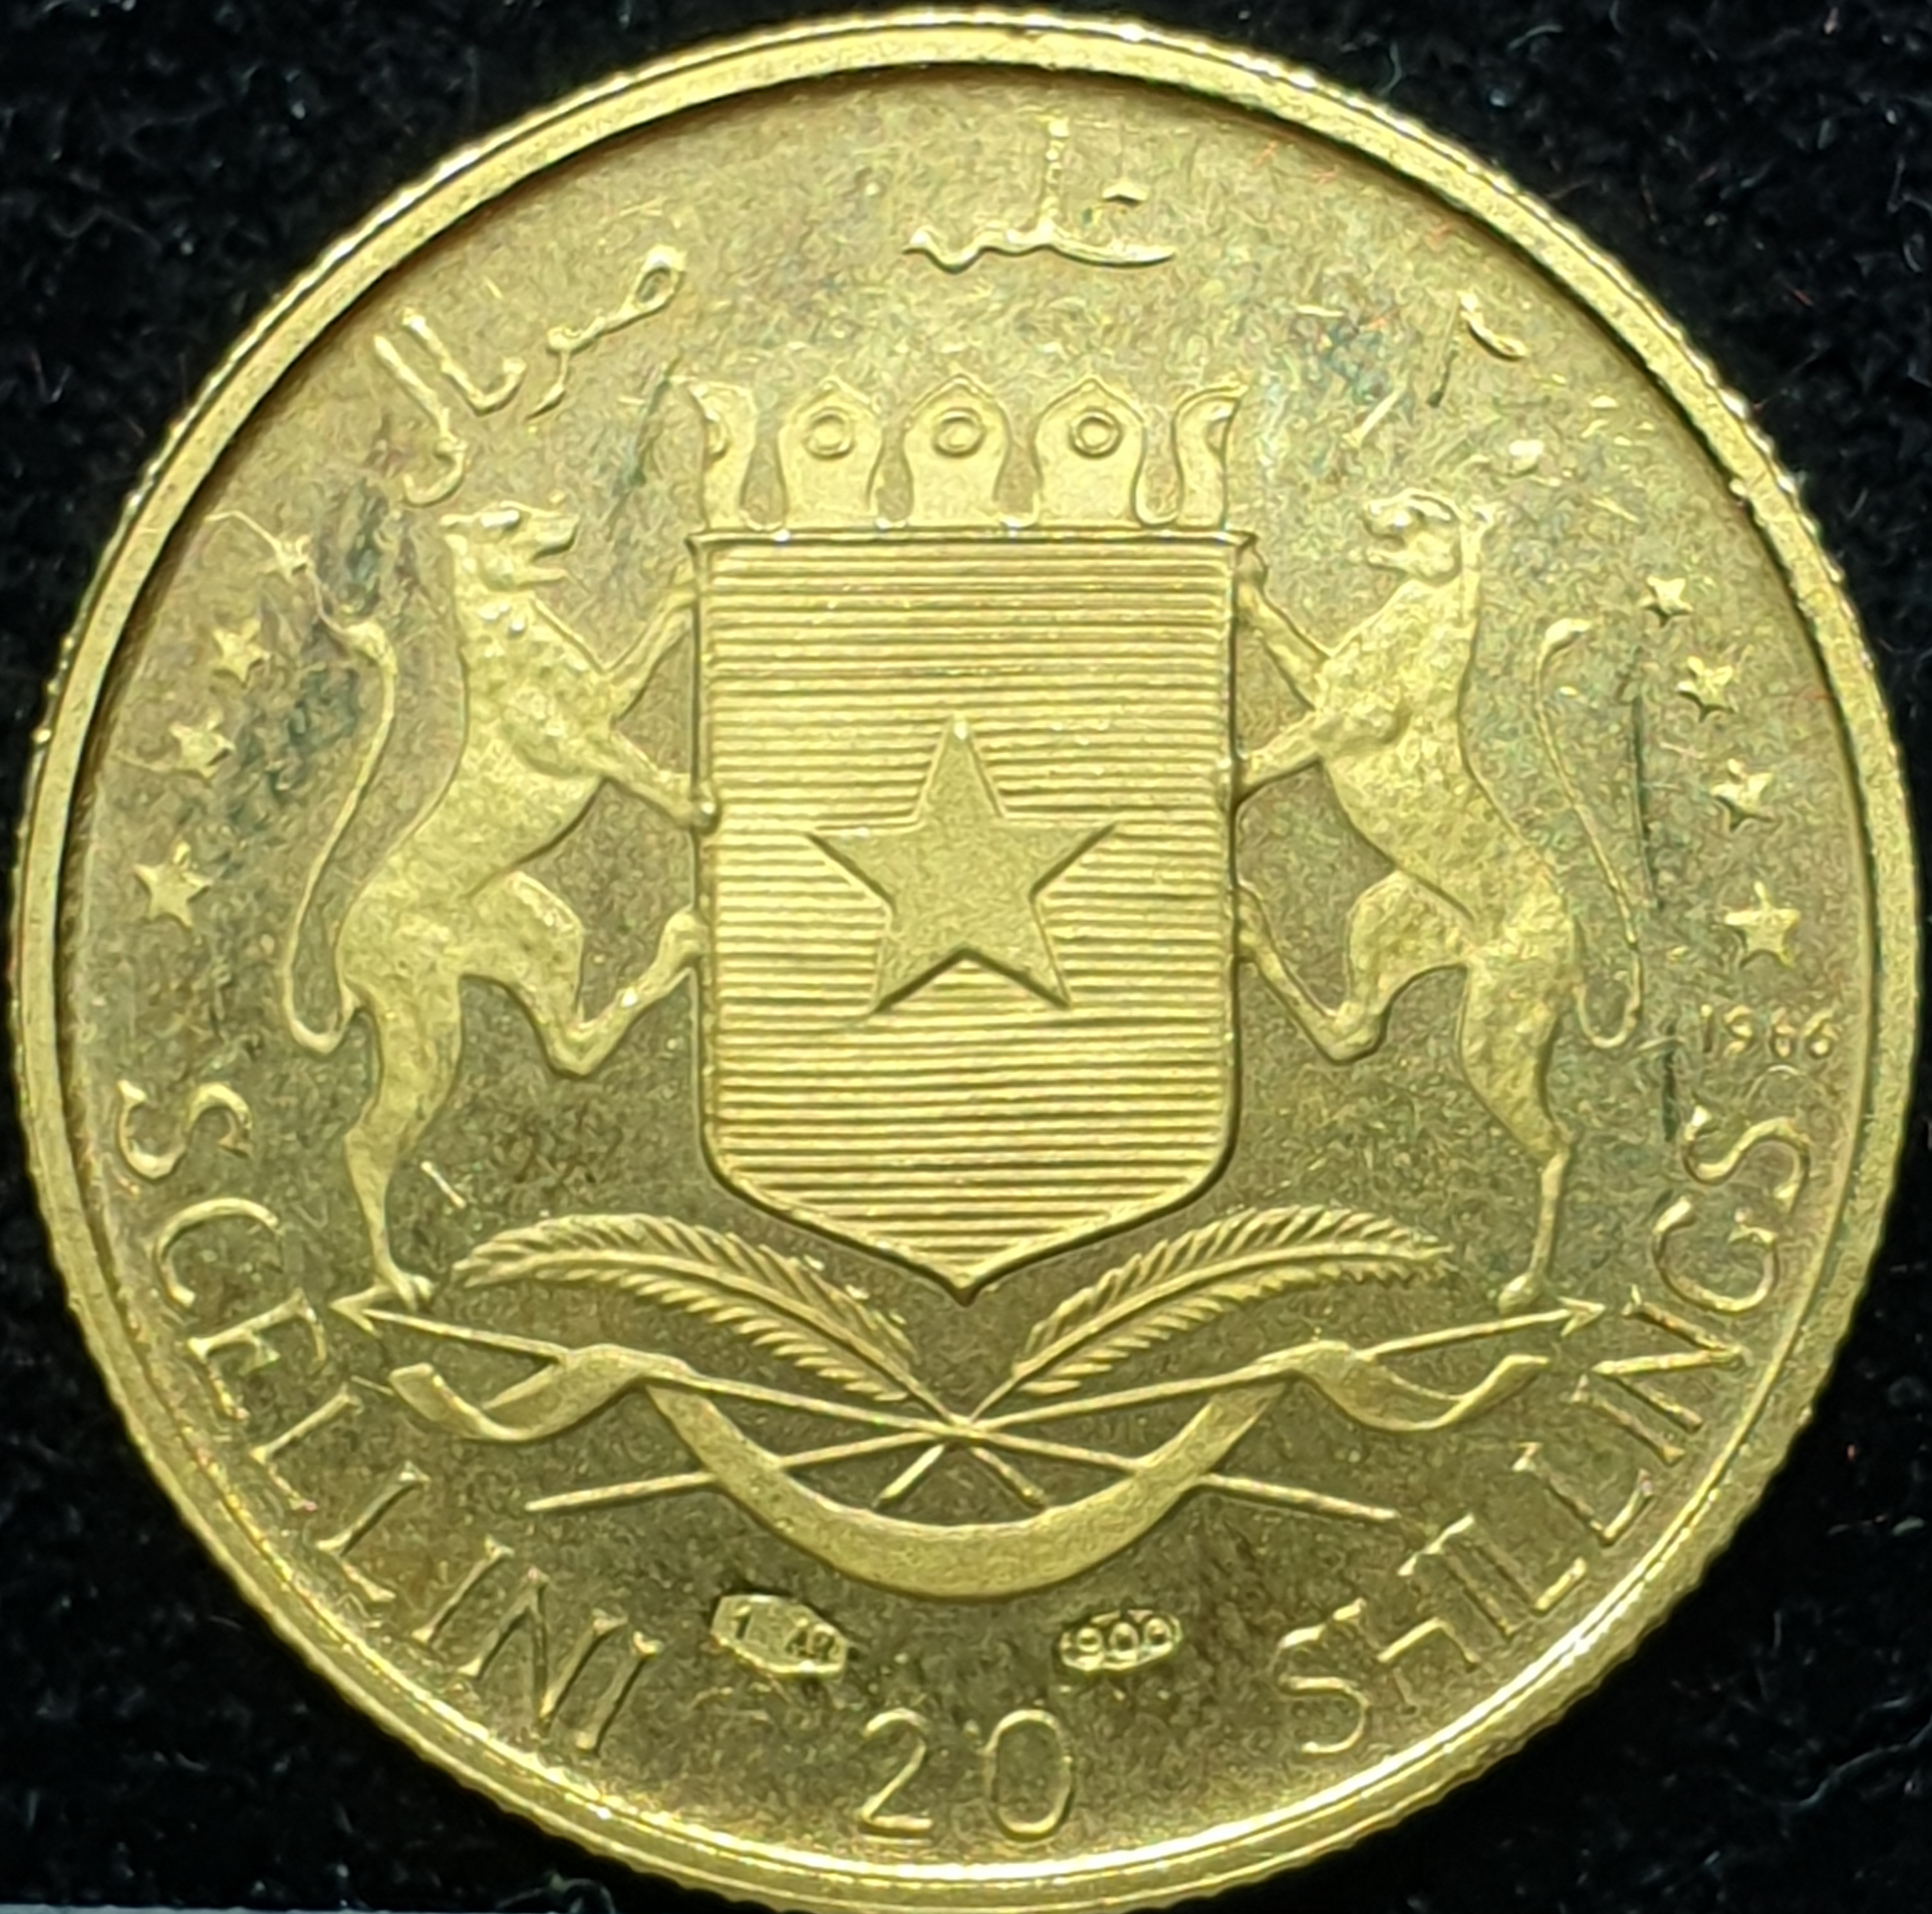 Somalia - 20 shillings - 1965 - Independence